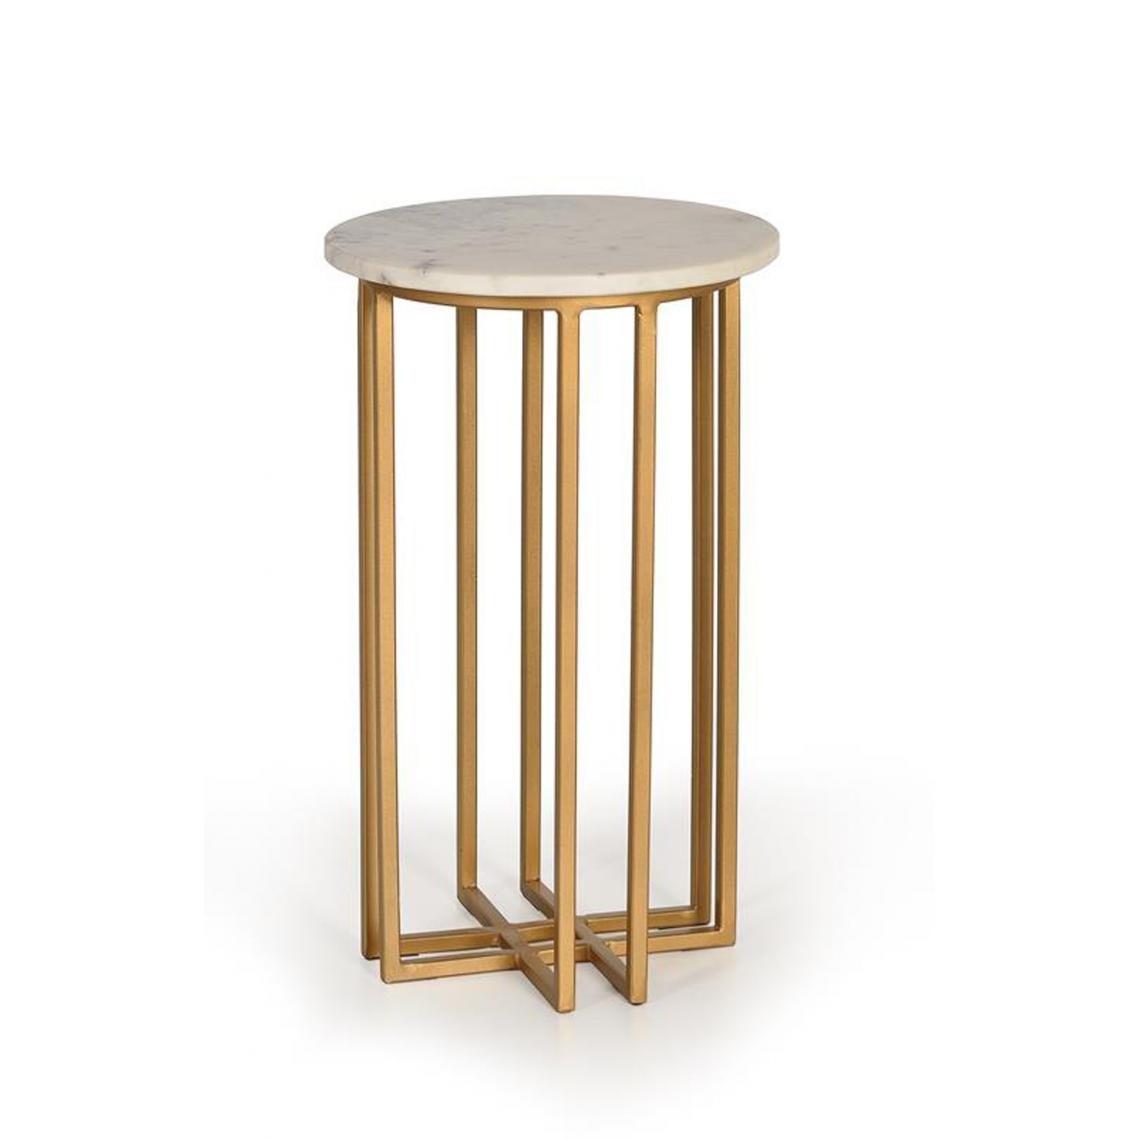 Pegane - Table basse en marbre et métal coloris blanc / doré - diamètre 30 x hauteur 50 cm - Tables basses